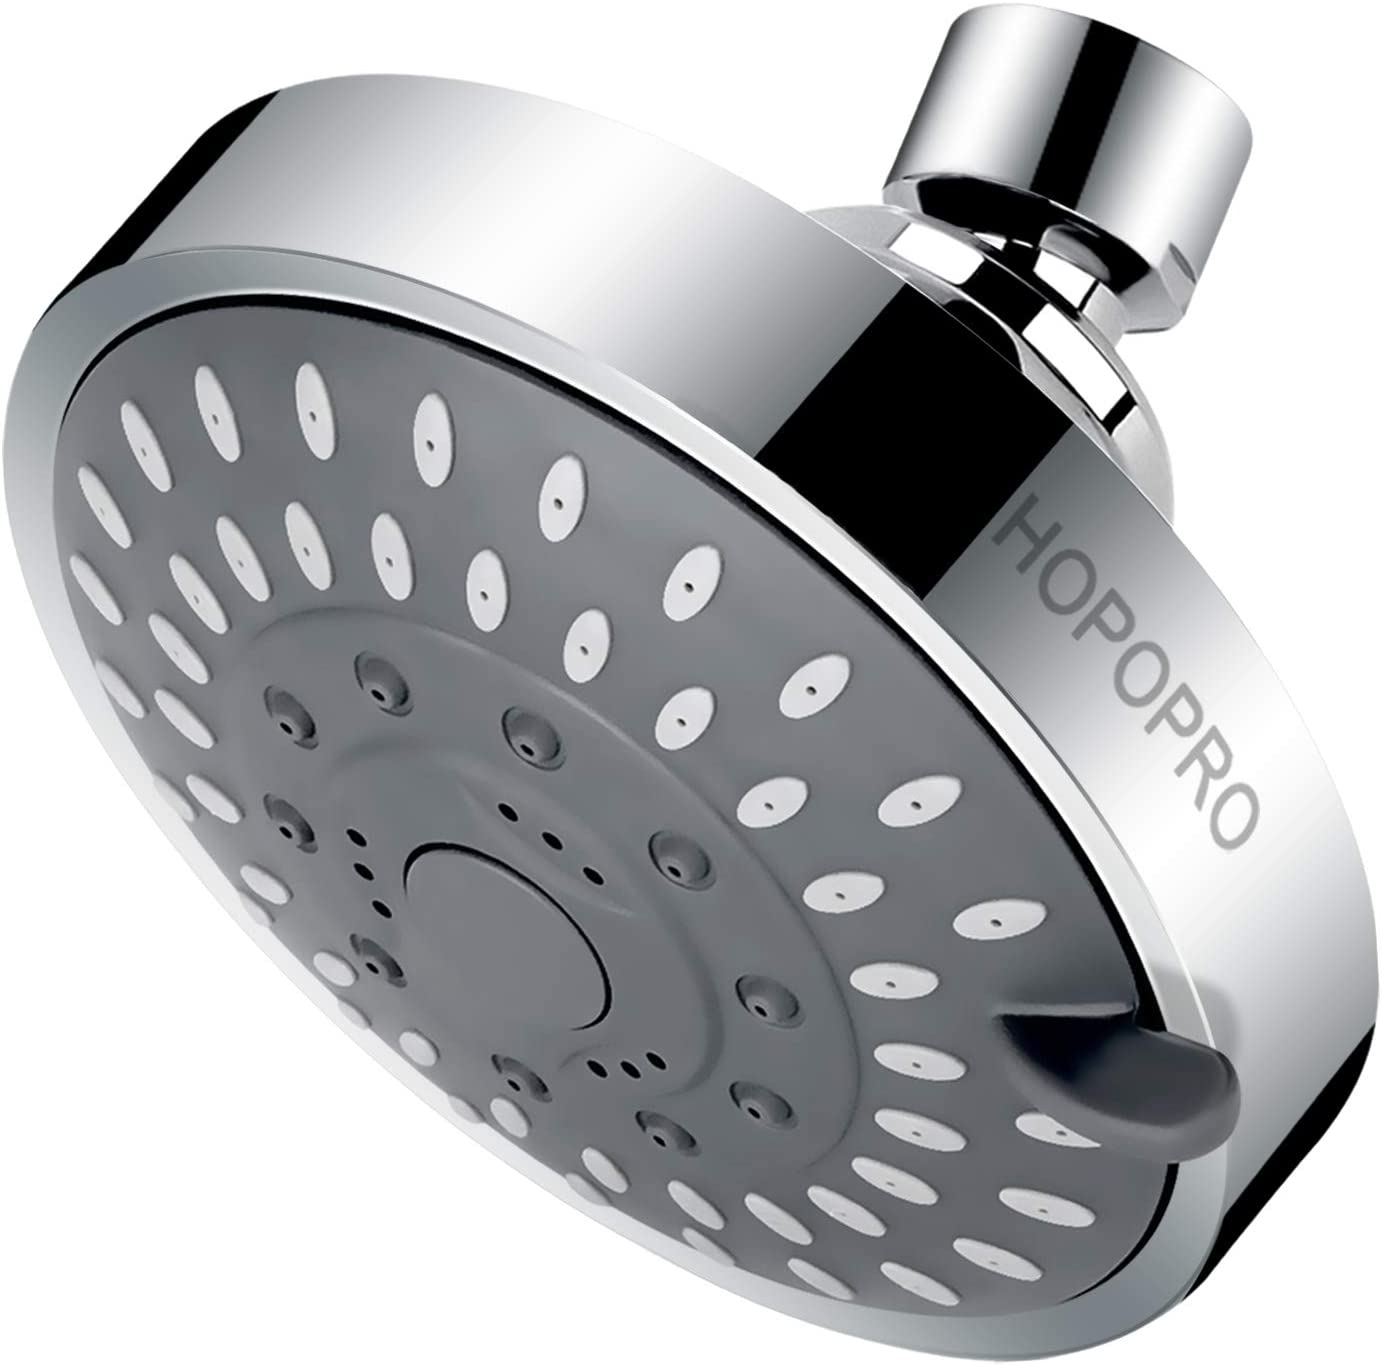 Hopopro High Pressure 4-Inch Fixed Shower Head